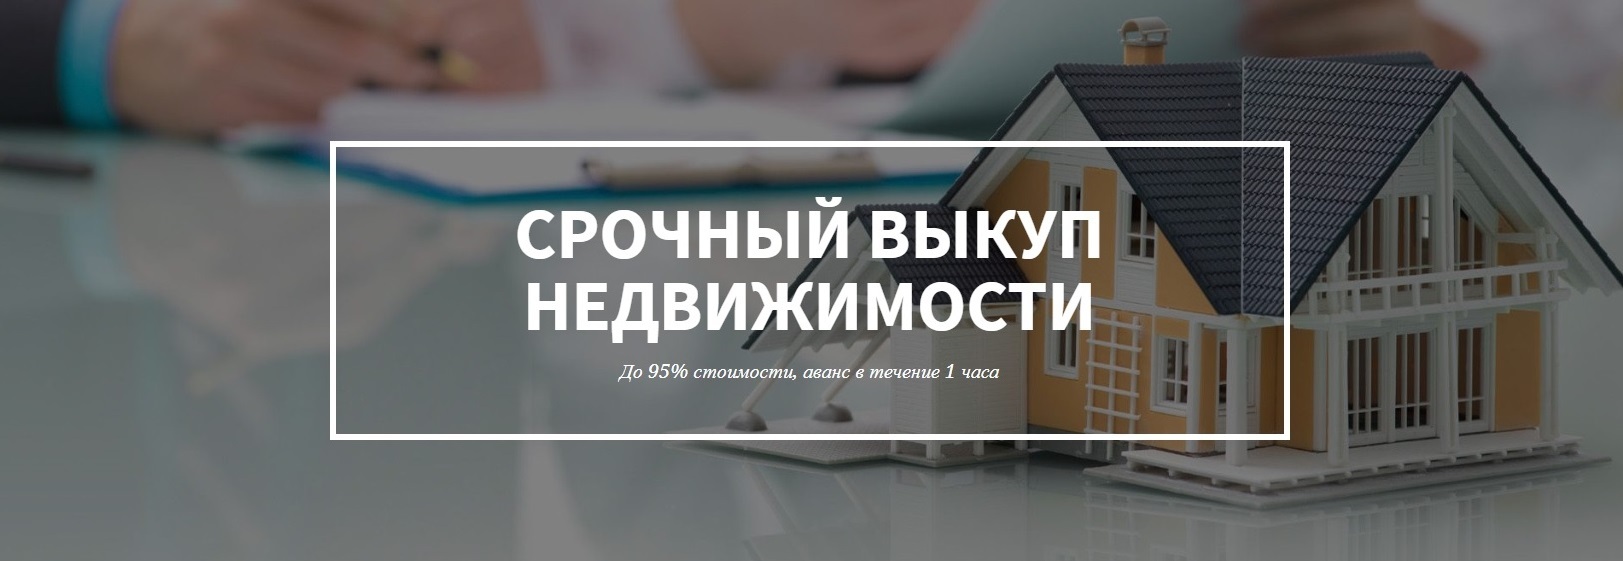 дизайн картинка выкупа недвижимости в Красноярске